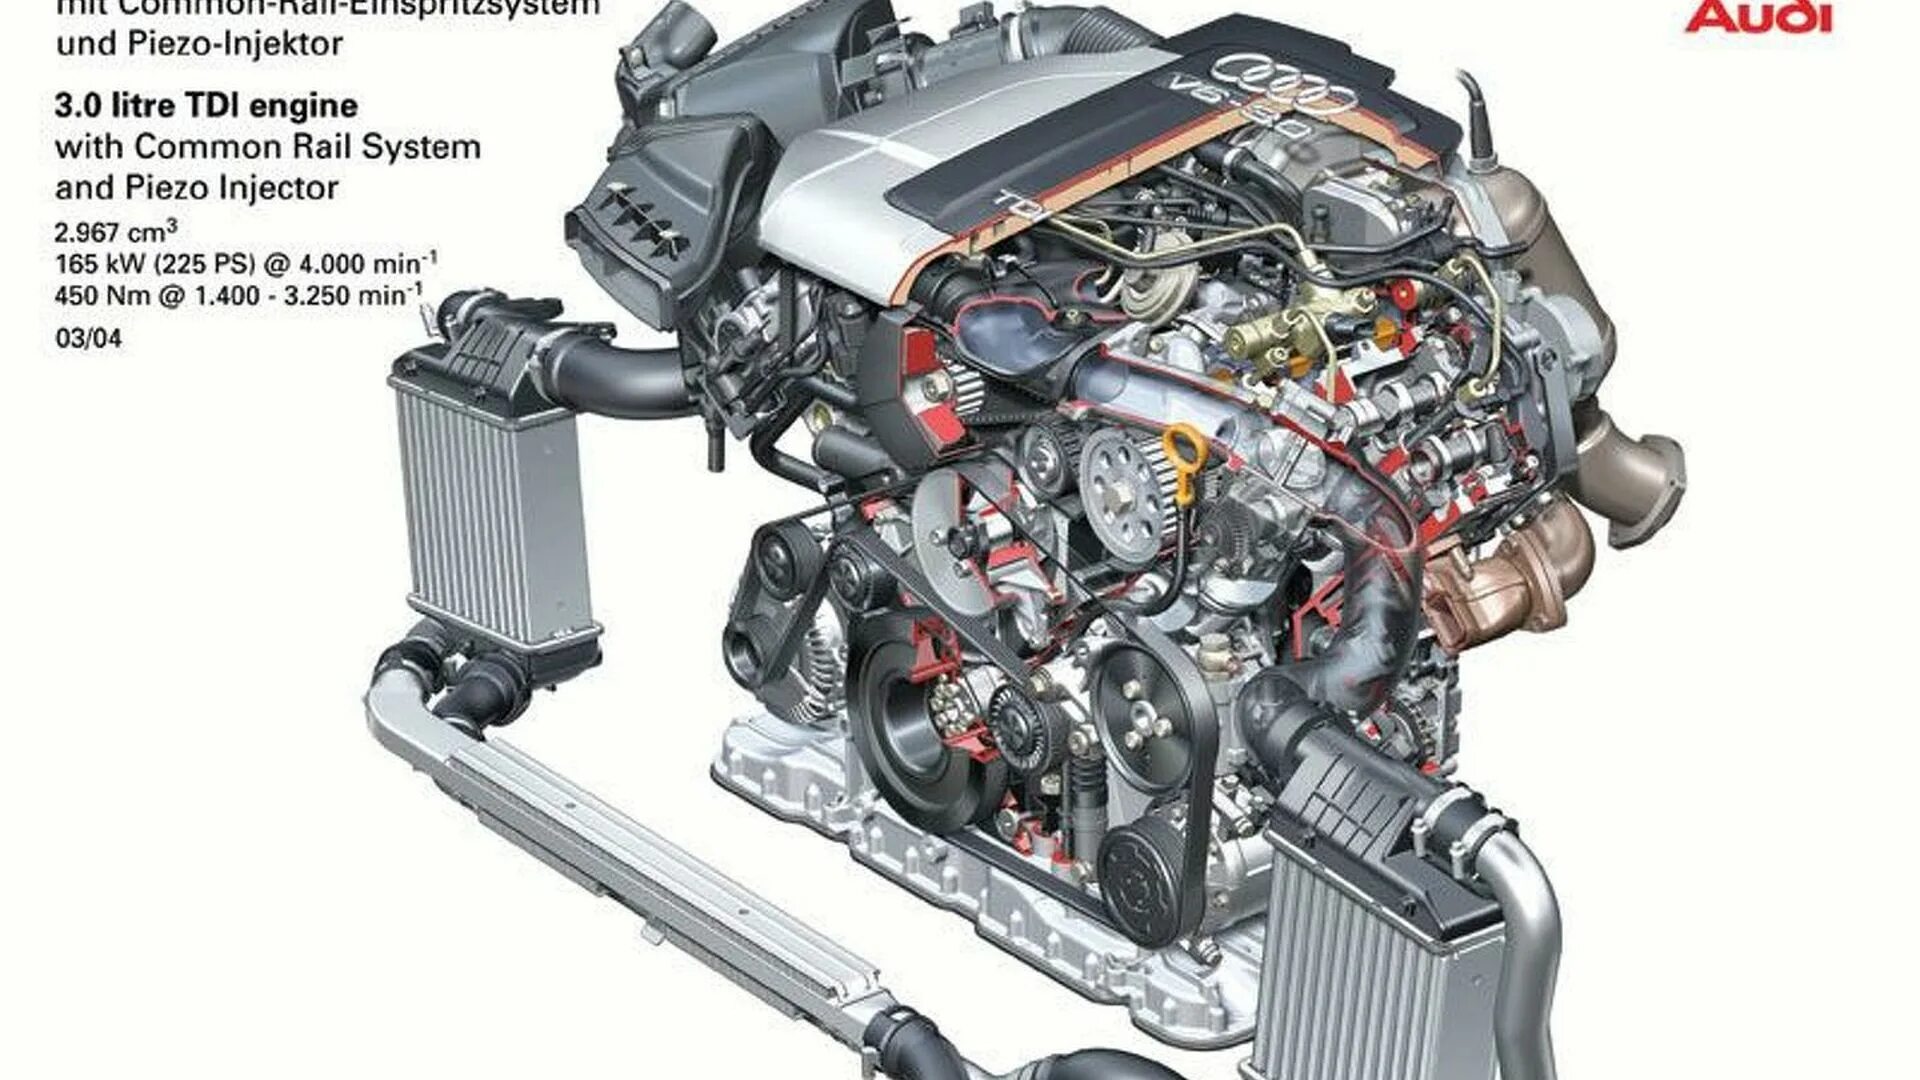 А6 с6 3.0 дизель. Двигатель Ауди v6 4.2 TDI. Audi a6 2.0 Diesel мотор. 3.0 TDI Audi двигатель. Система охлаждения двигателя Ауди q7 4,2tdi.